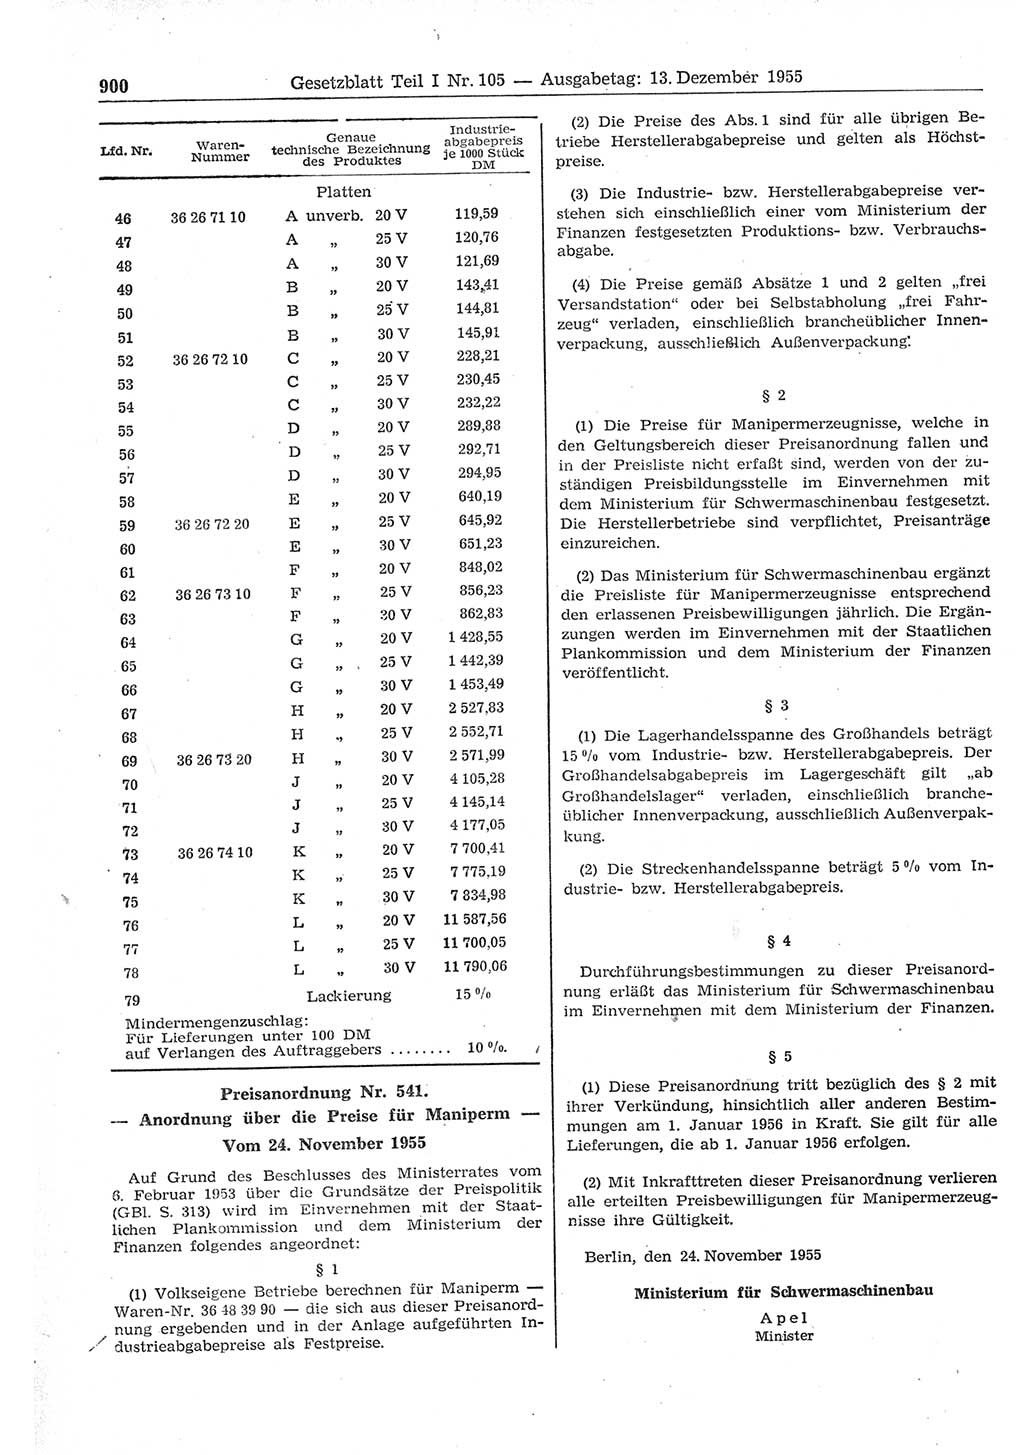 Gesetzblatt (GBl.) der Deutschen Demokratischen Republik (DDR) Teil Ⅰ 1955, Seite 900 (GBl. DDR Ⅰ 1955, S. 900)